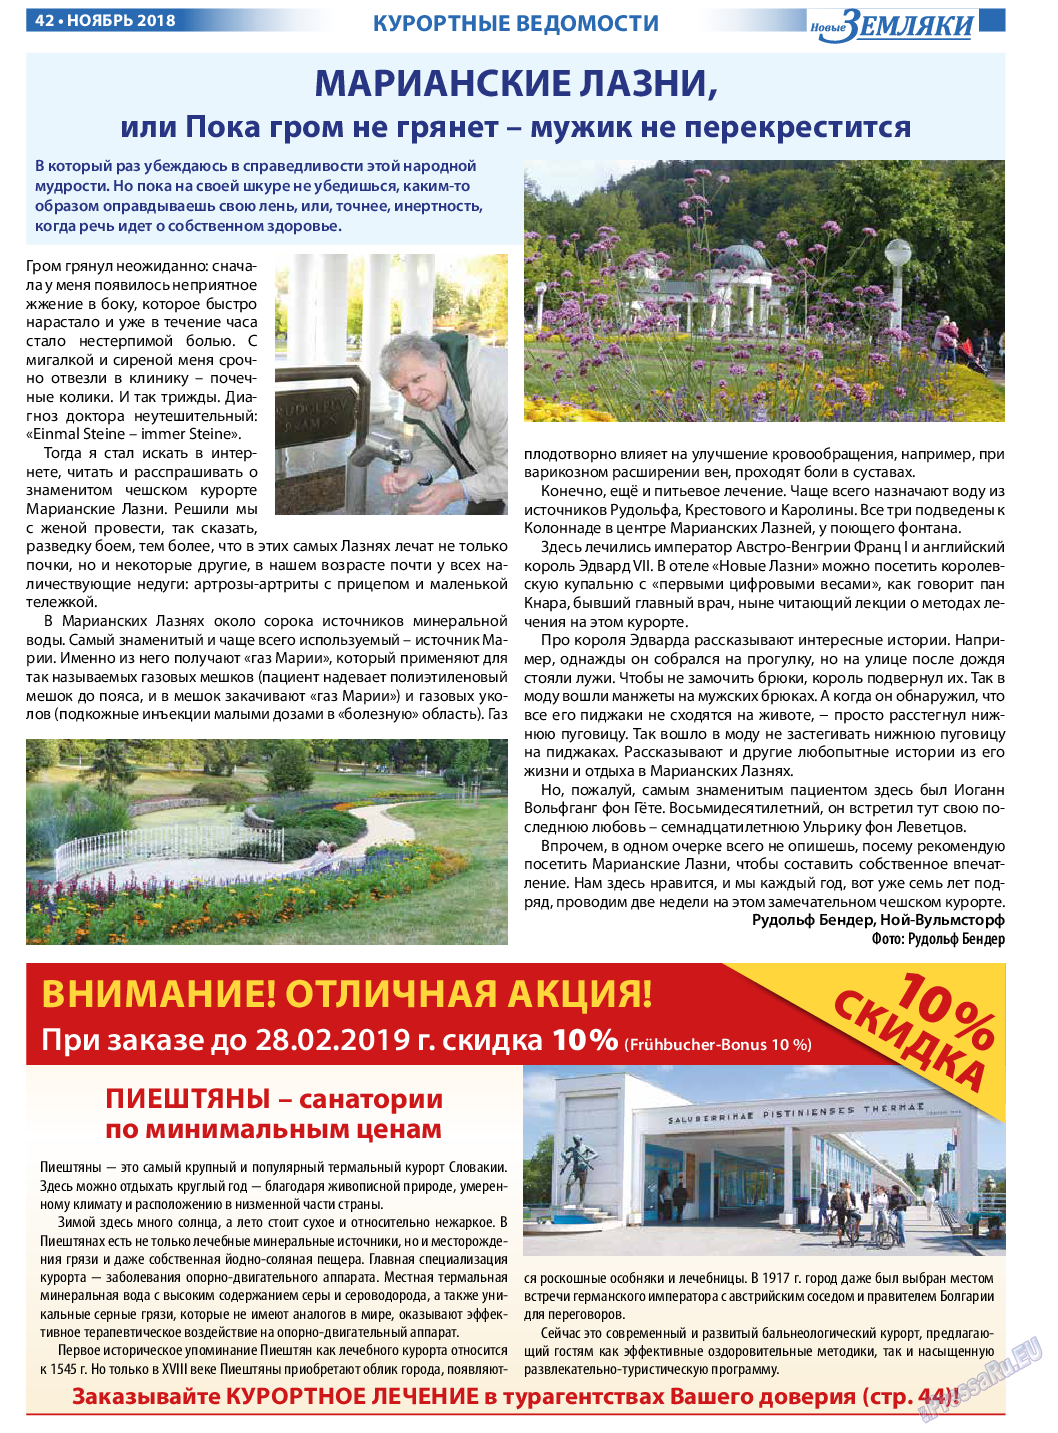 Новые Земляки, газета. 2018 №11 стр.42